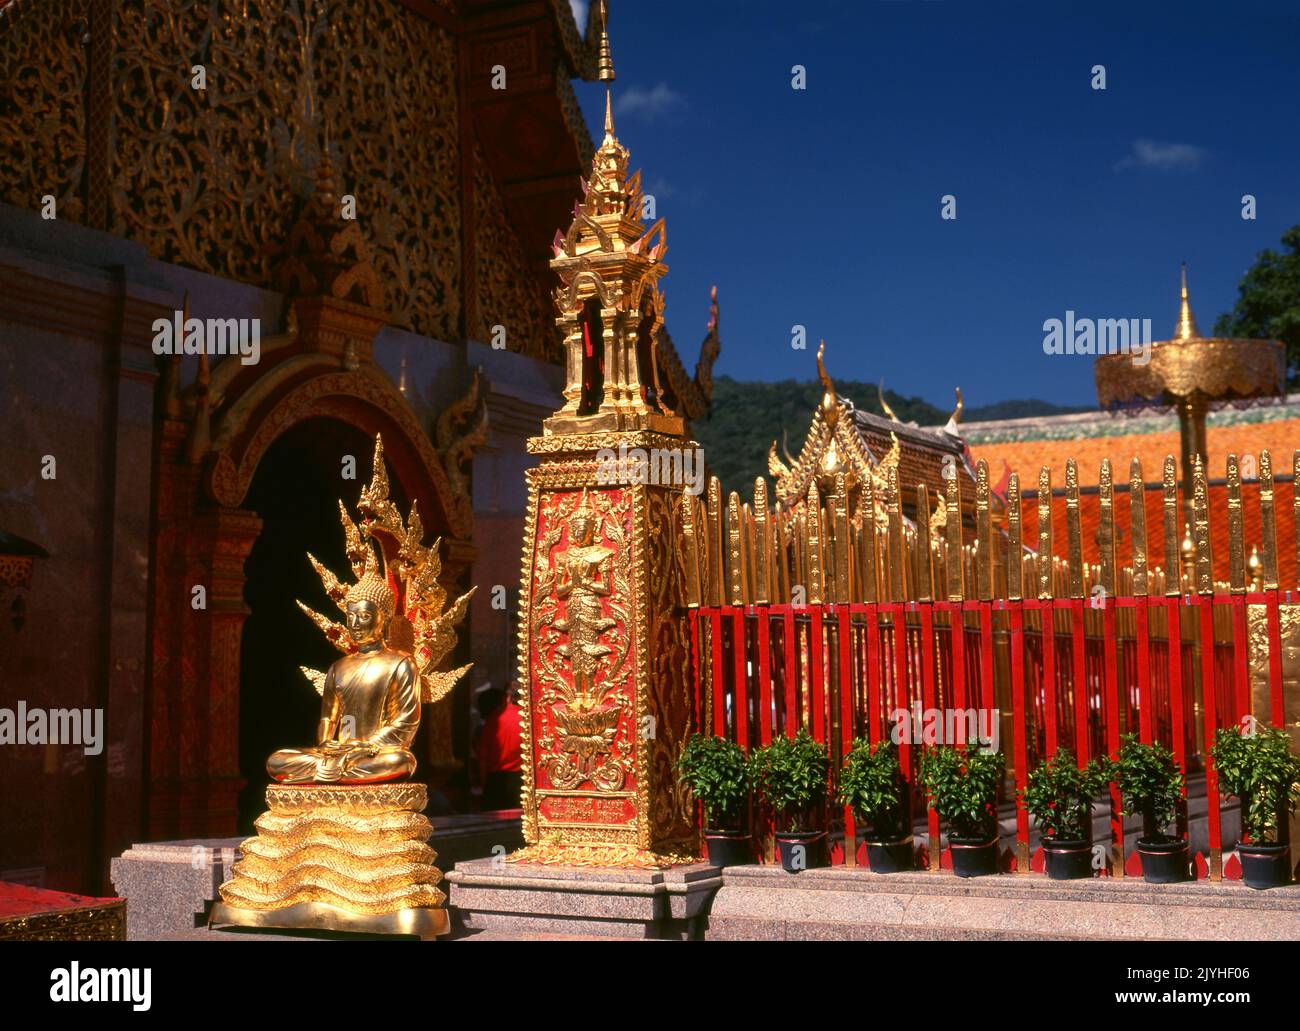 Tailandia: Wat Phrathat Doi Suthep, un templo budista Theravada situado en Doi Suthep (montaña Suthep), con vistas a la ciudad de Chiang Mai. El magnífico chedi dorado, que data del siglo 16th, ofrece magníficas vistas a través del valle de Chiang Mai hasta el río Ping. El rey Mengrai fundó la ciudad de Chiang Mai (que significa 'nueva ciudad') en 1296, y sucedió a Chiang Rai como capital del reino Lanna. Foto de stock